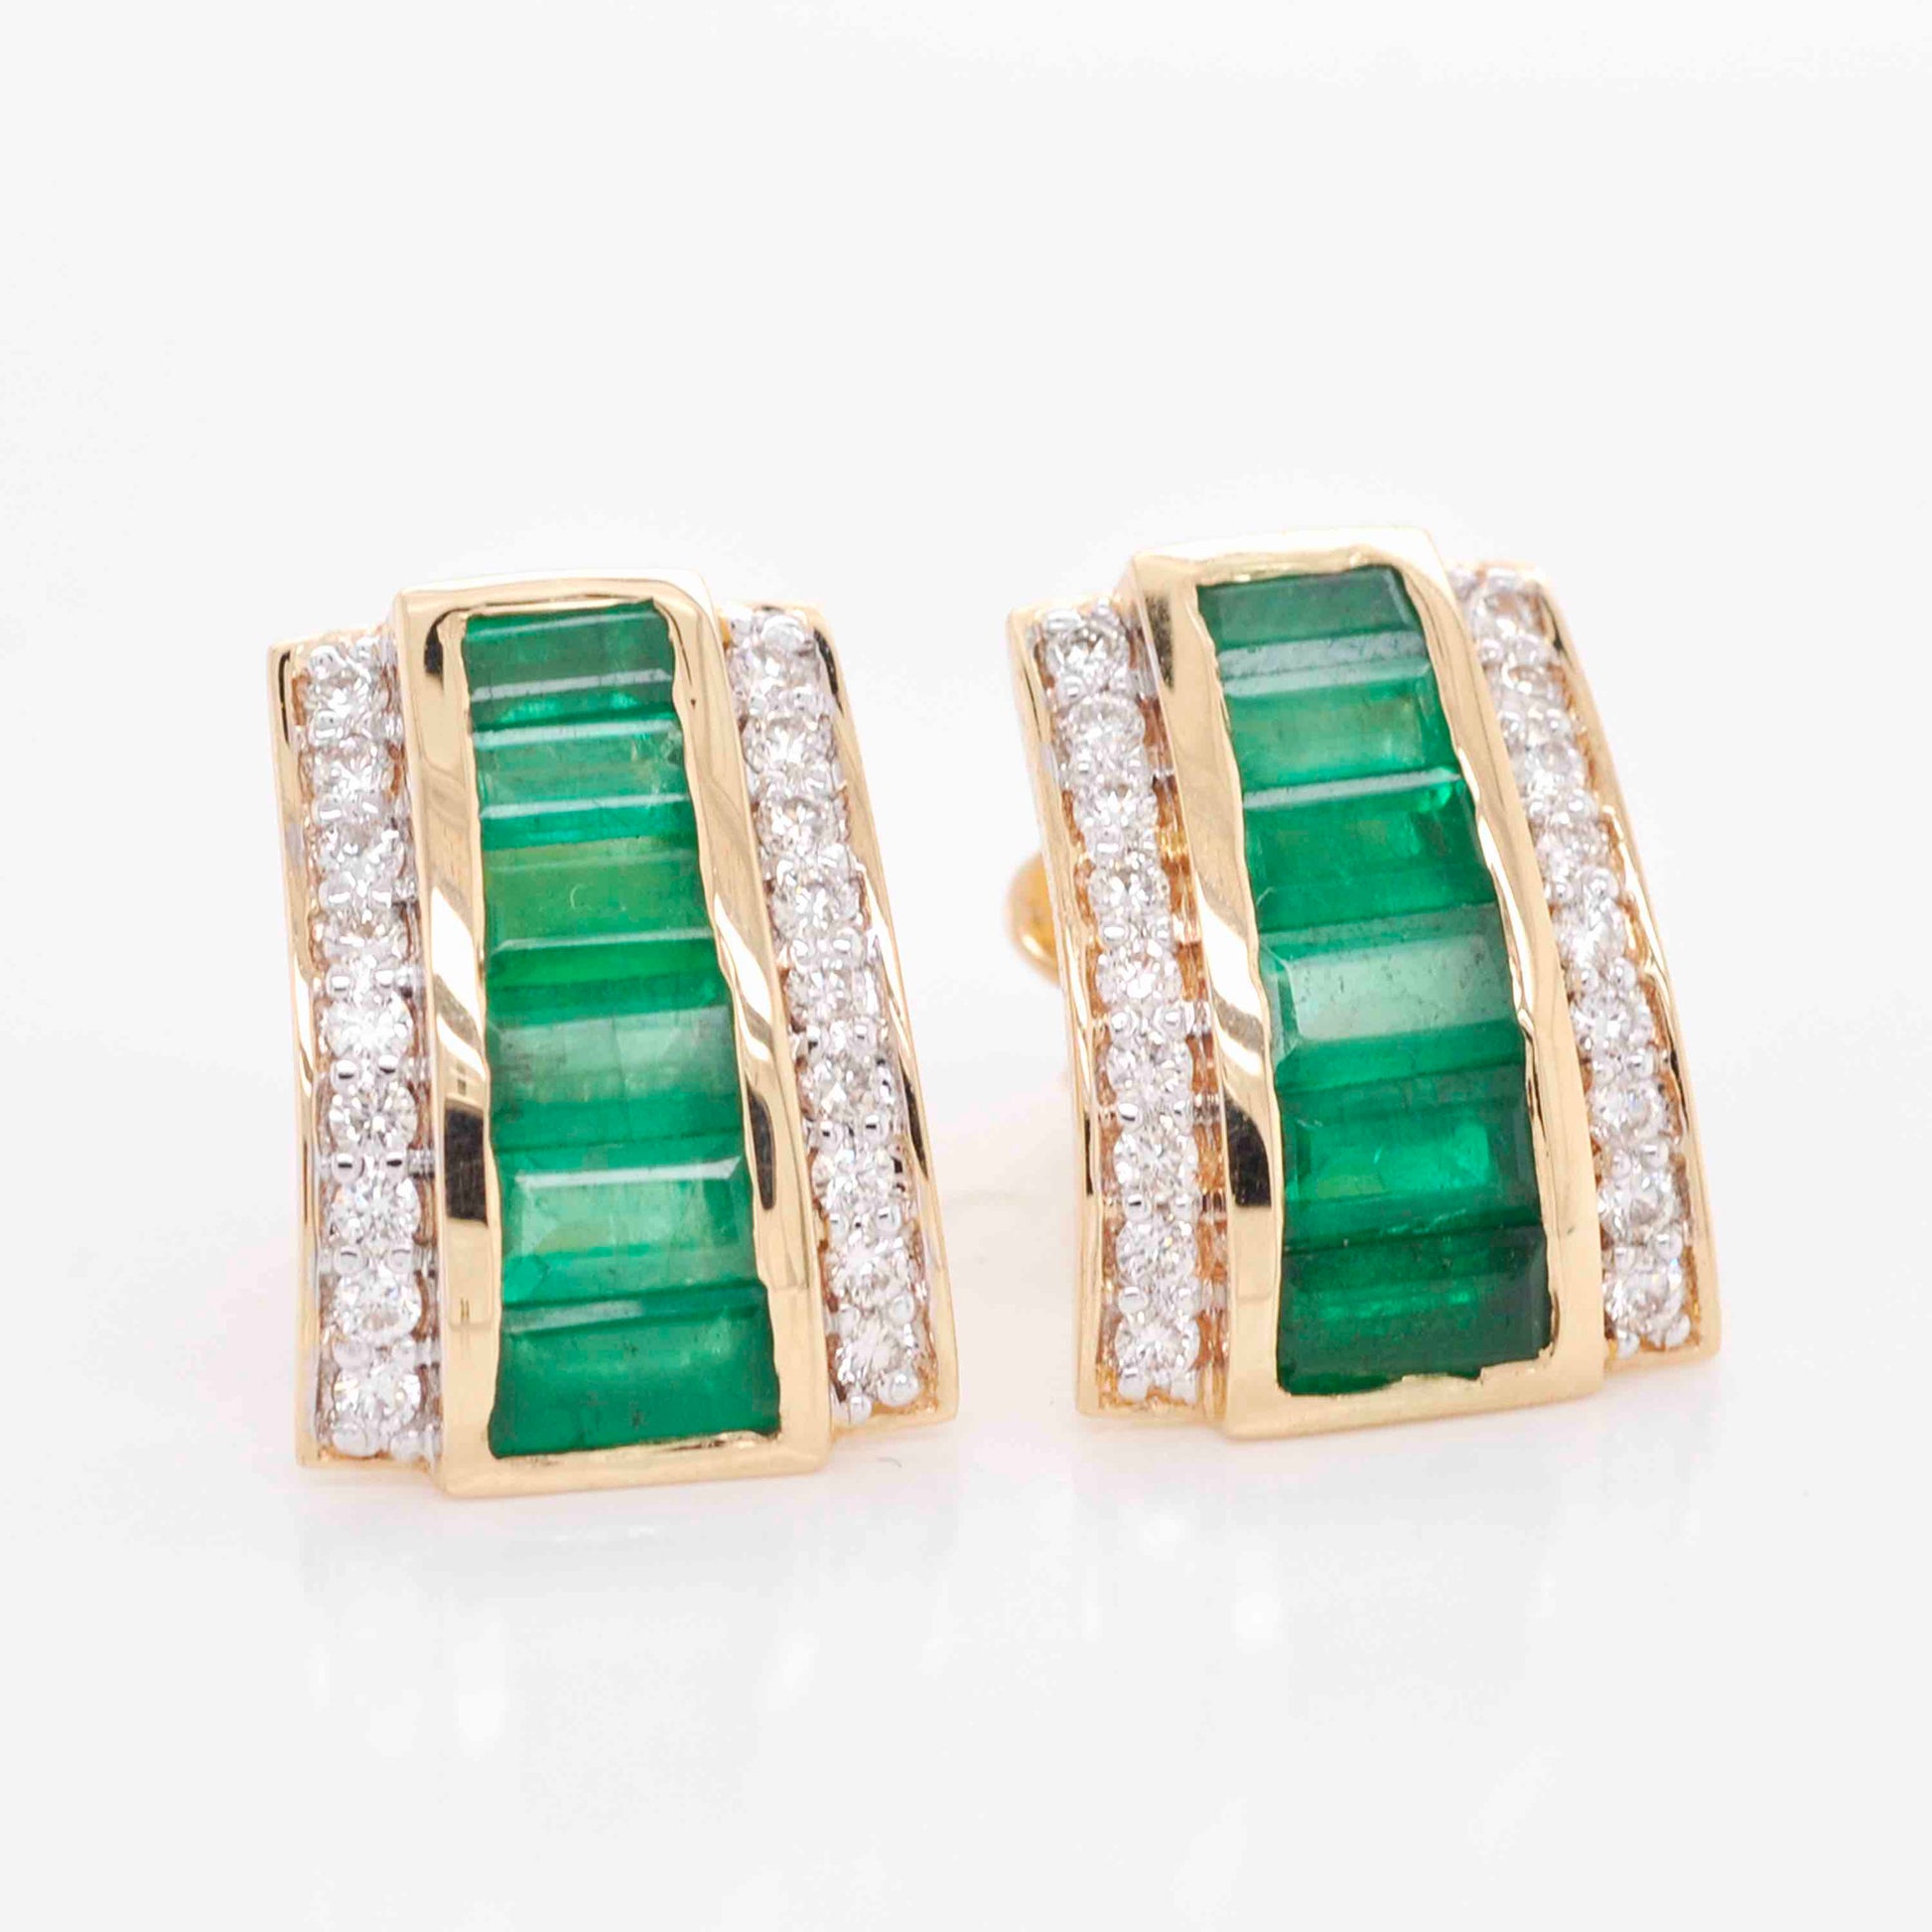 Zambian emerald gemstone earrings